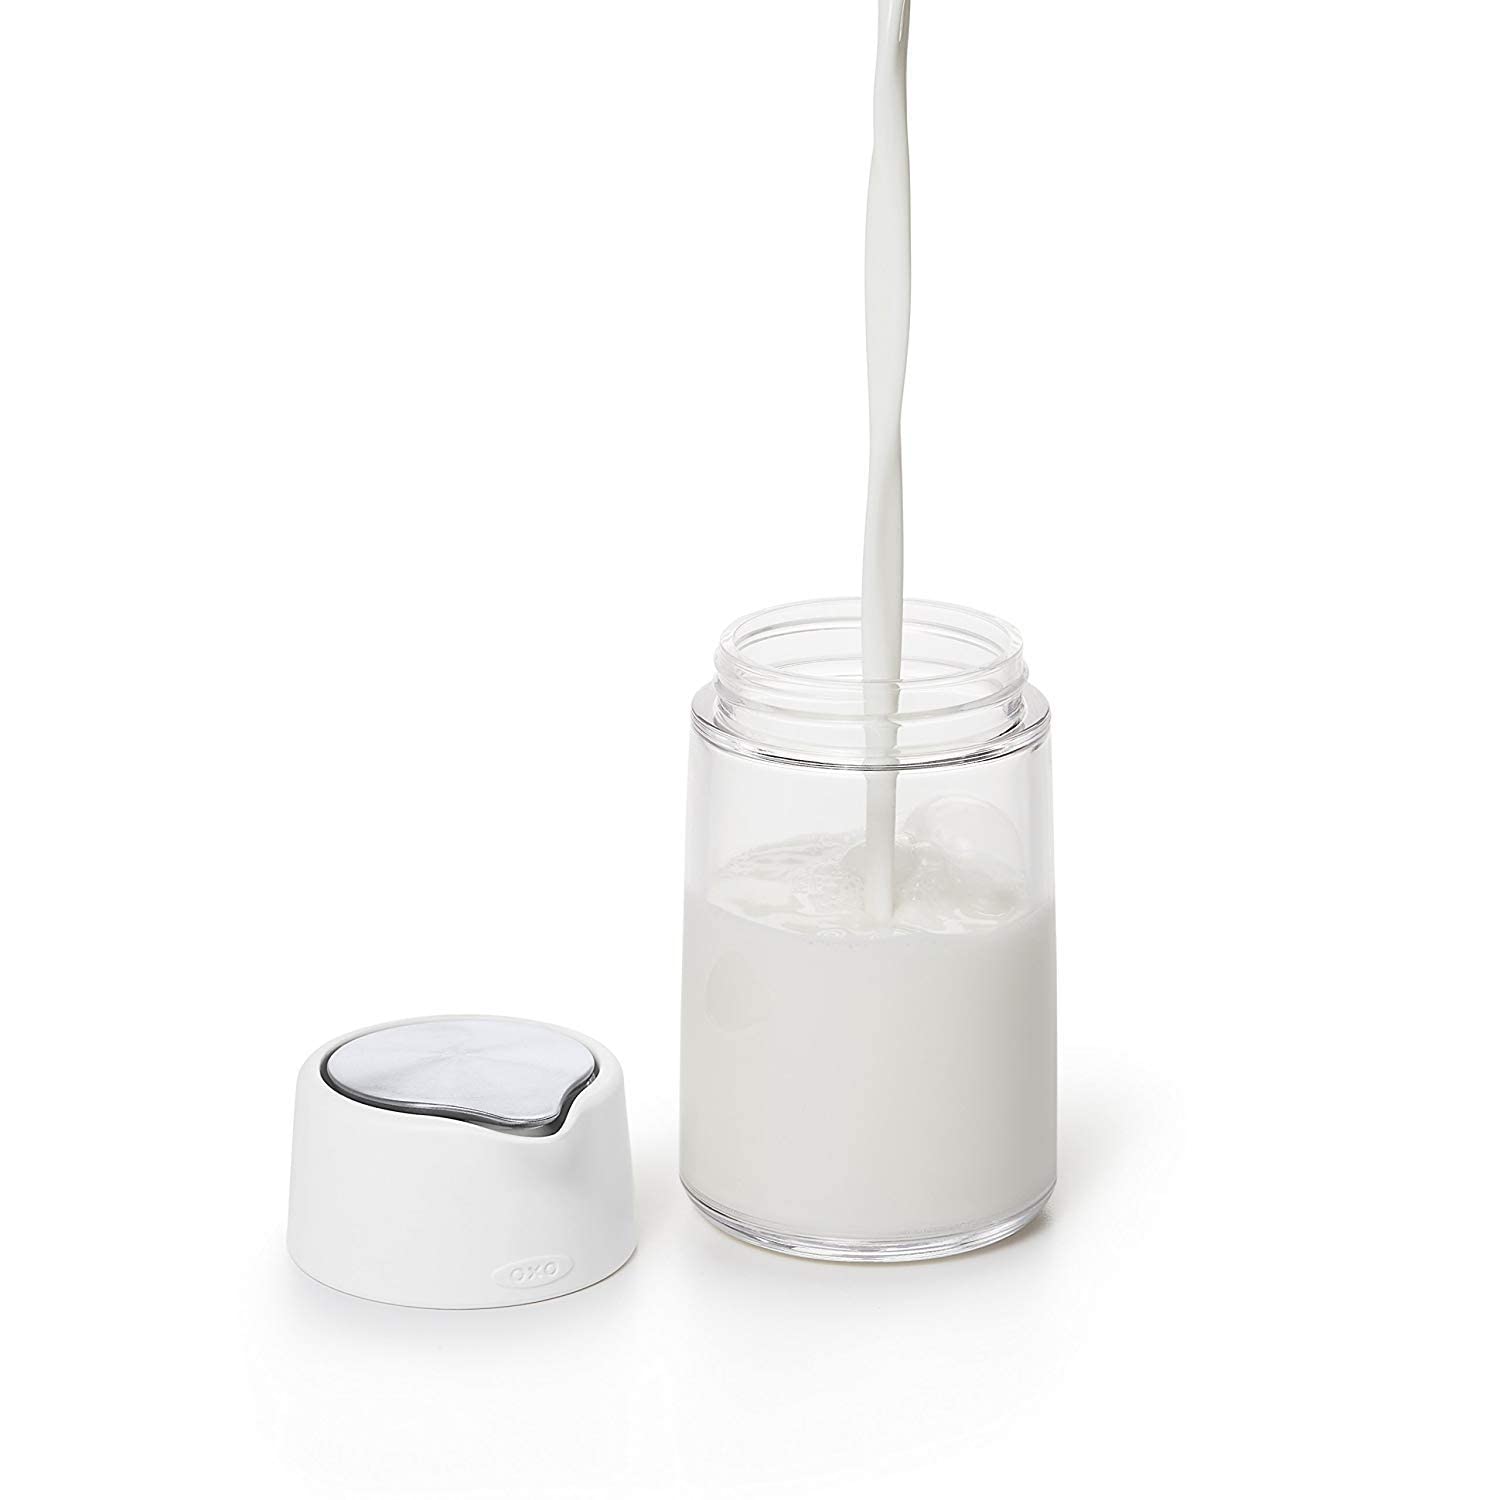 OXO Good Grips Glass Creamer Dispenser, Set of 2